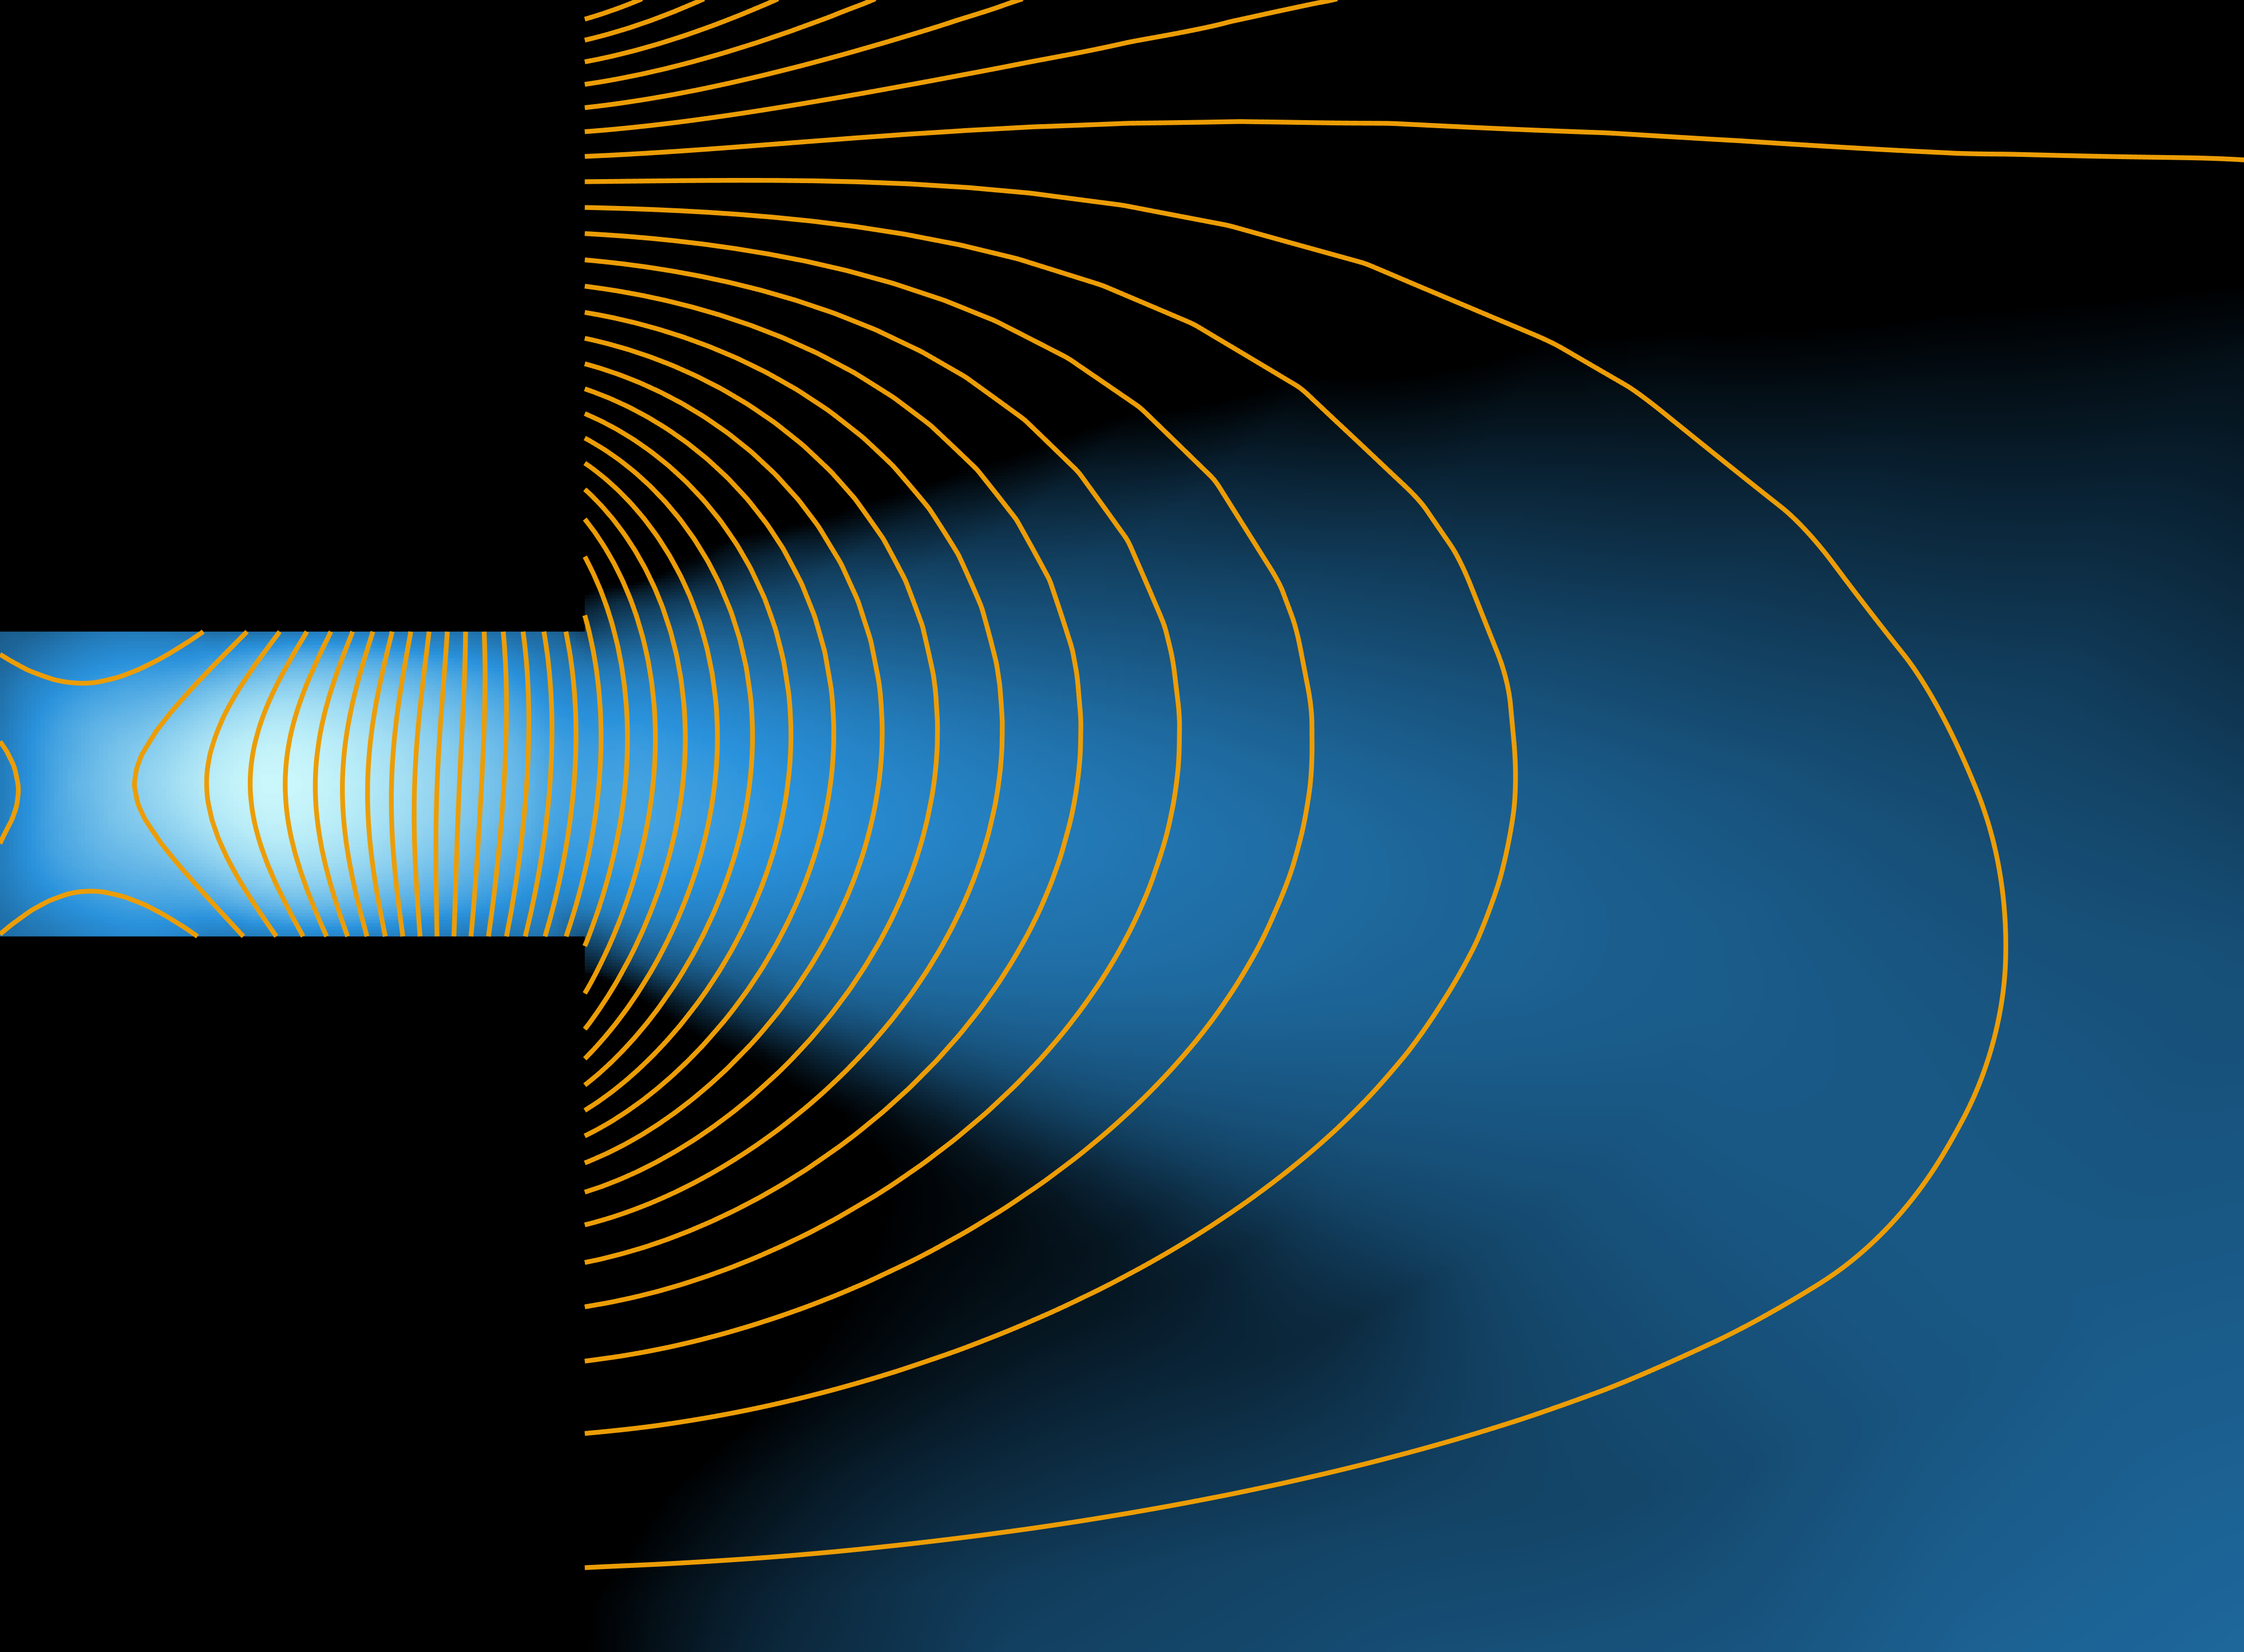 HET plasma discharge with magnetic field lines